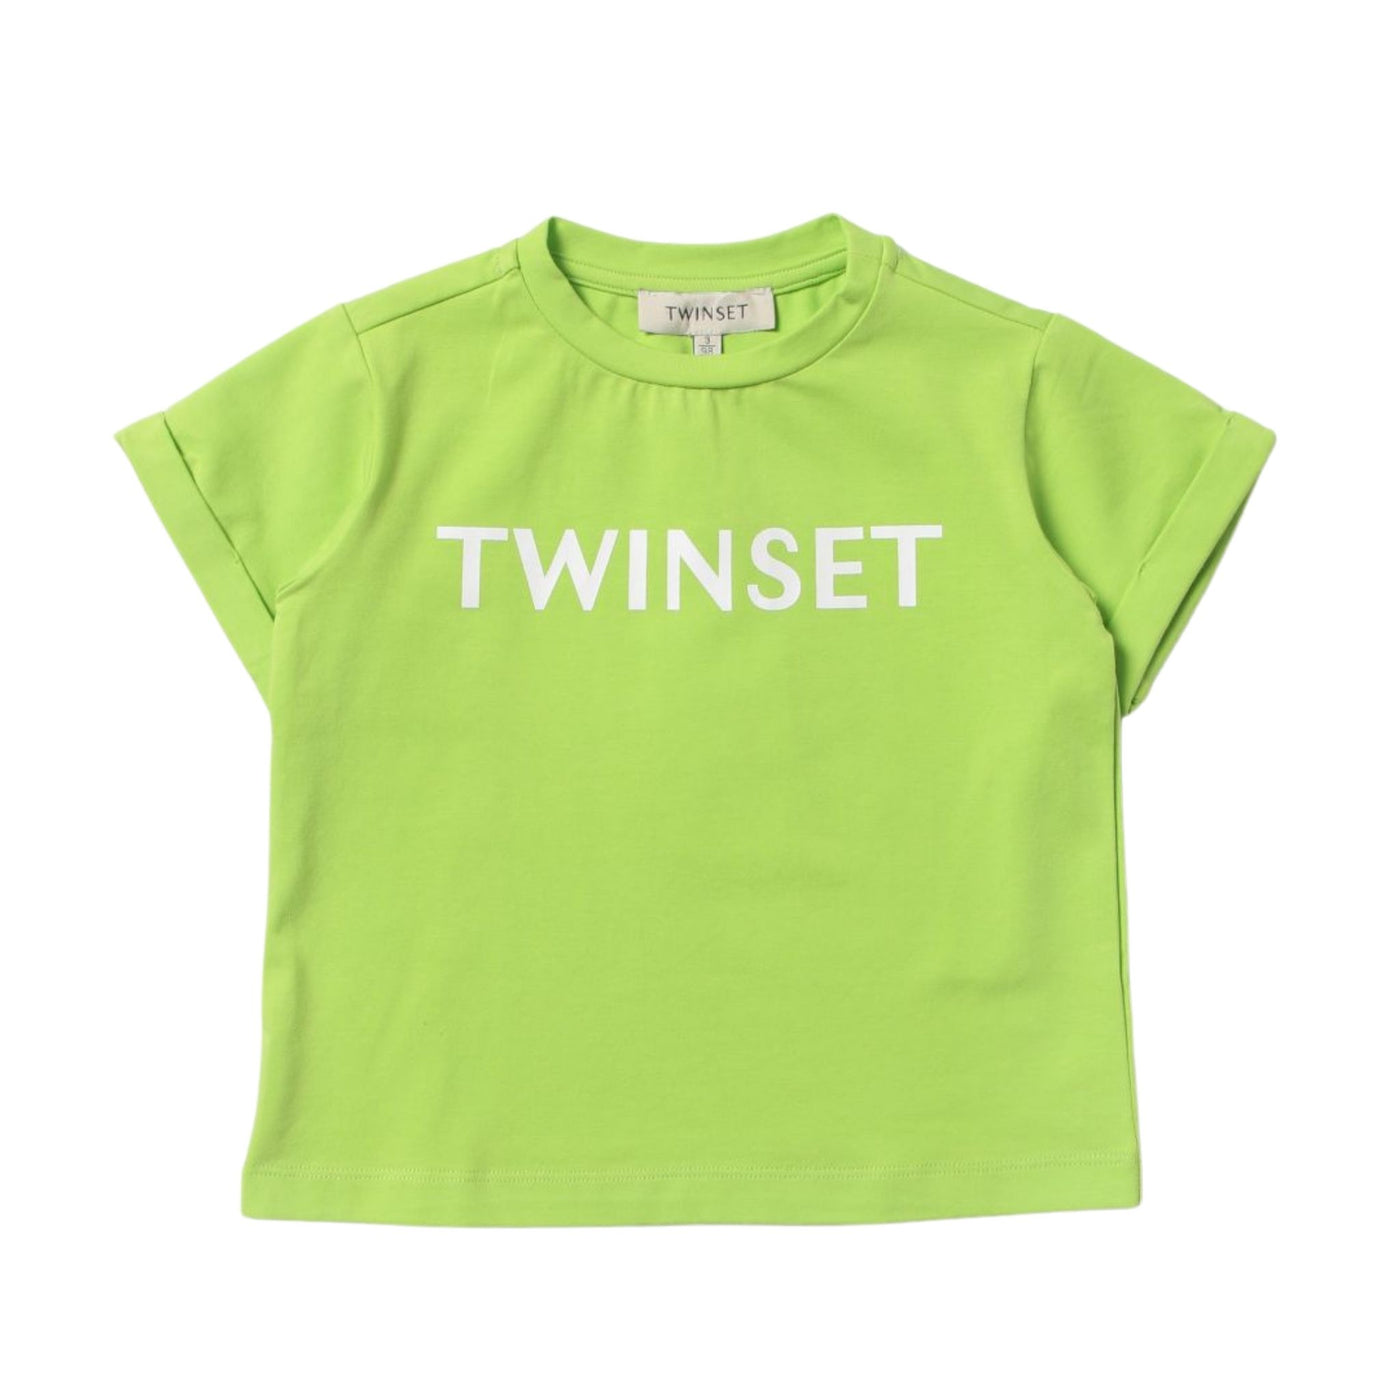 T-shirt da bambina in cotone con logo brand stampato frontale firmata Twinset